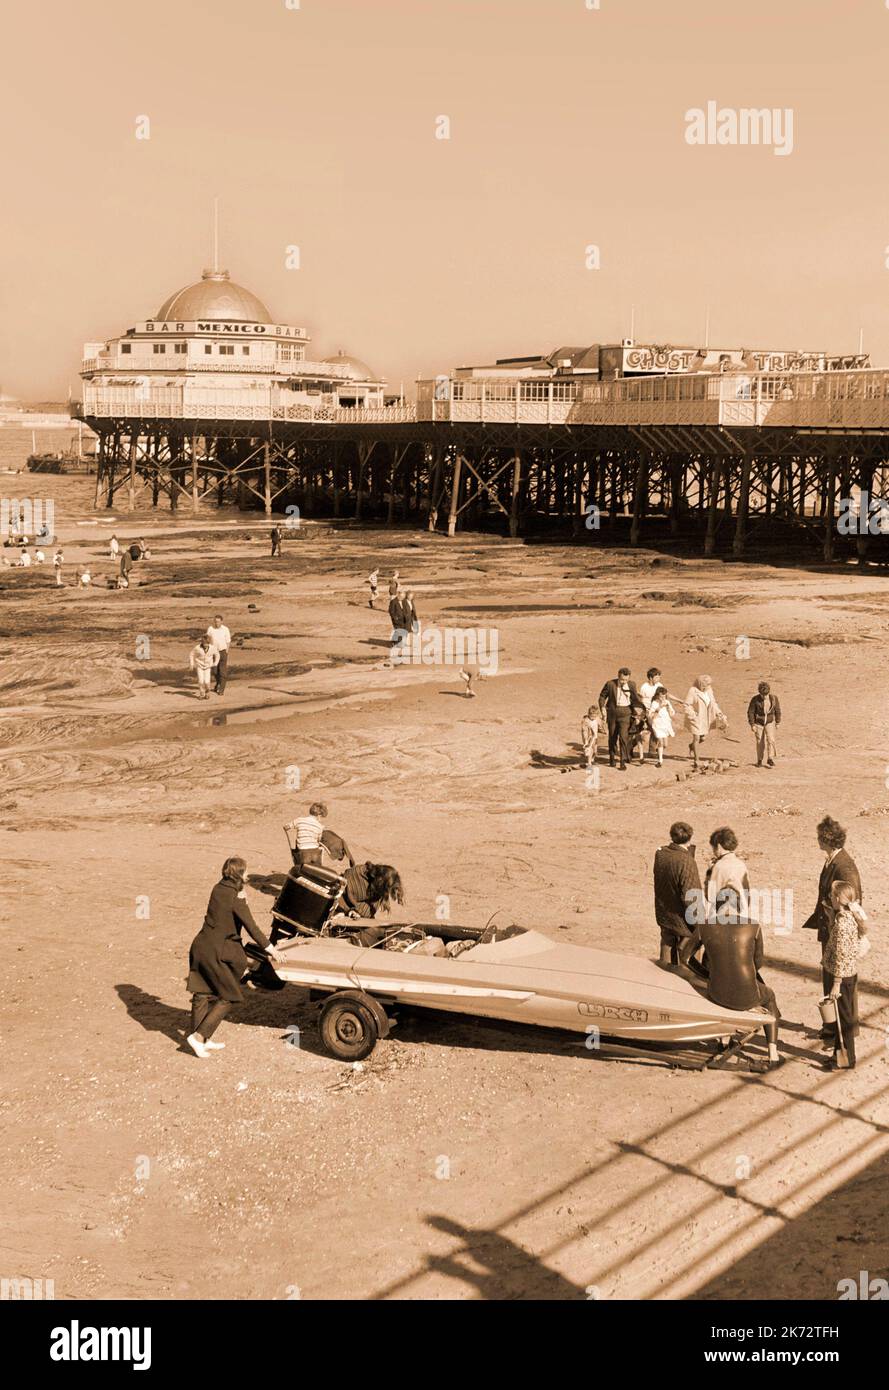 Vintage New Brighton, 1970, stazione balneare, il famoso molo con il Messico bar e il treno fantasma, turisti godendo la spiaggia. Wallasey, Merseyside Foto Stock